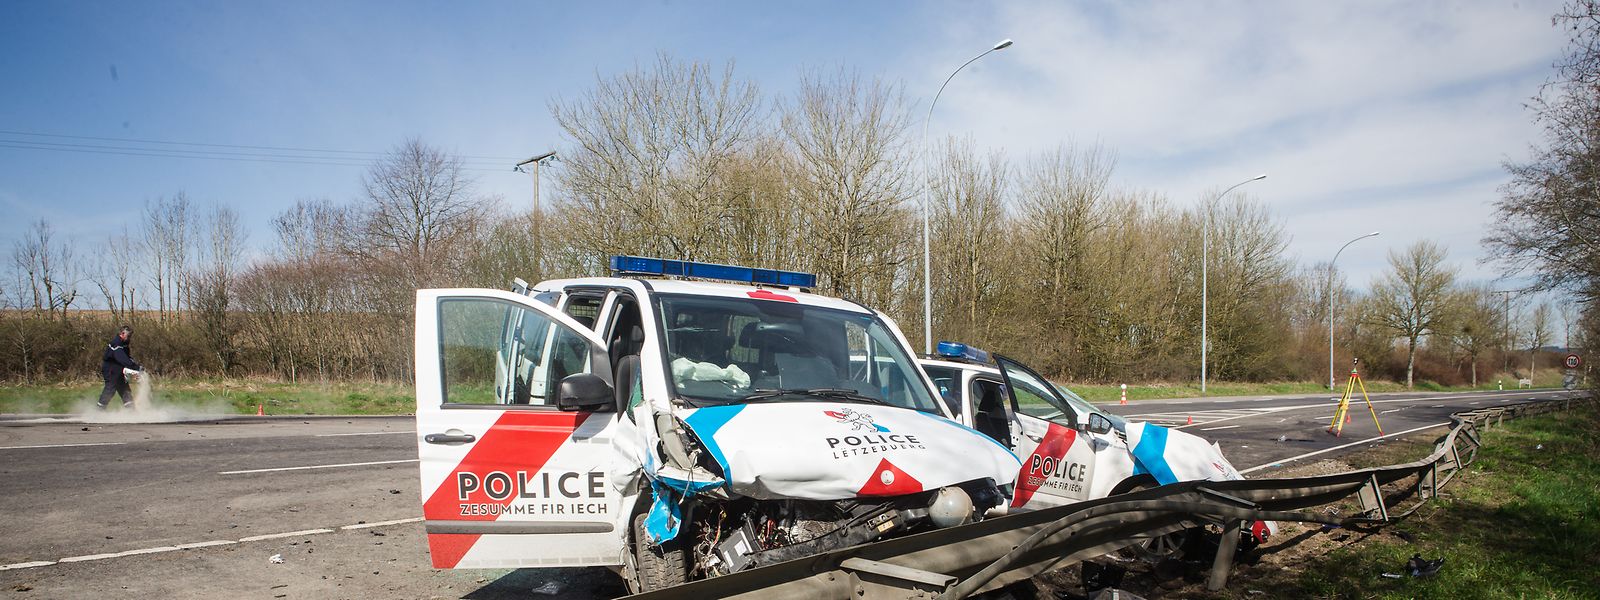 Der Polizeibus hatte den Streifenwagen am 14. April 2018 gegen 2 Uhr mit voller Wucht erfasst, als das Auto ein Wendemanöver durchführte. 